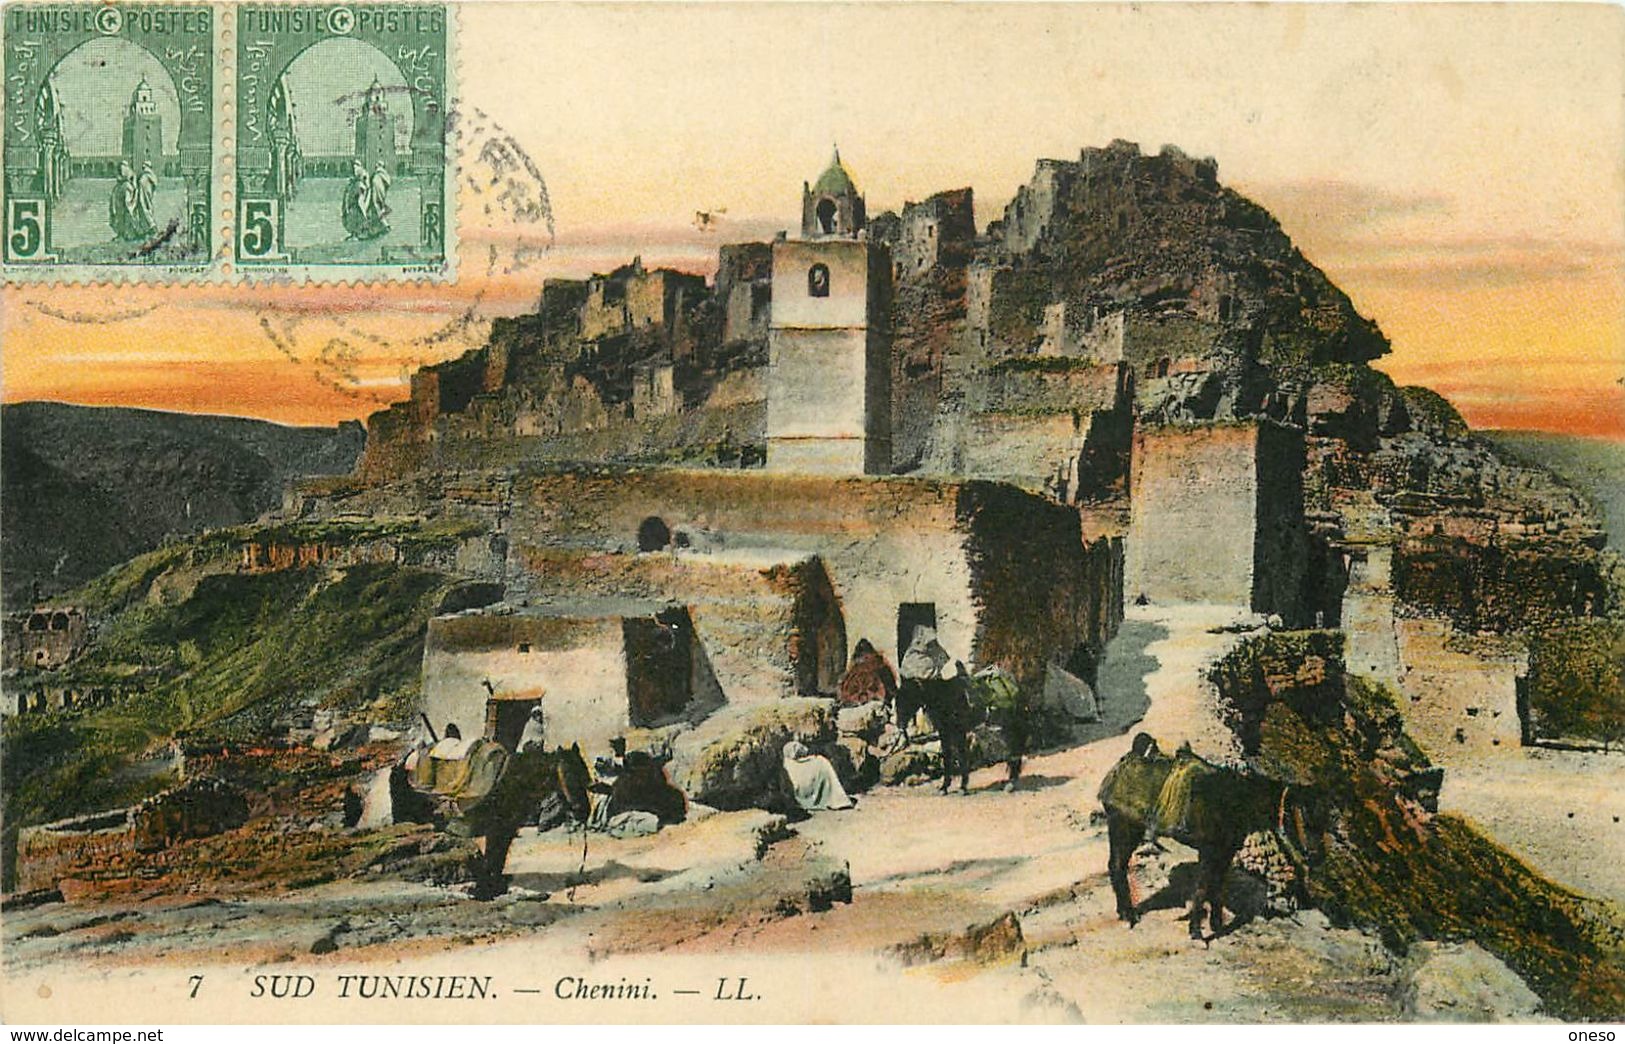 Etrangères - Tunisie - Lot N° 488 - Lots en vrac - Lot divers de Tunisie - Lot de 220 cartes